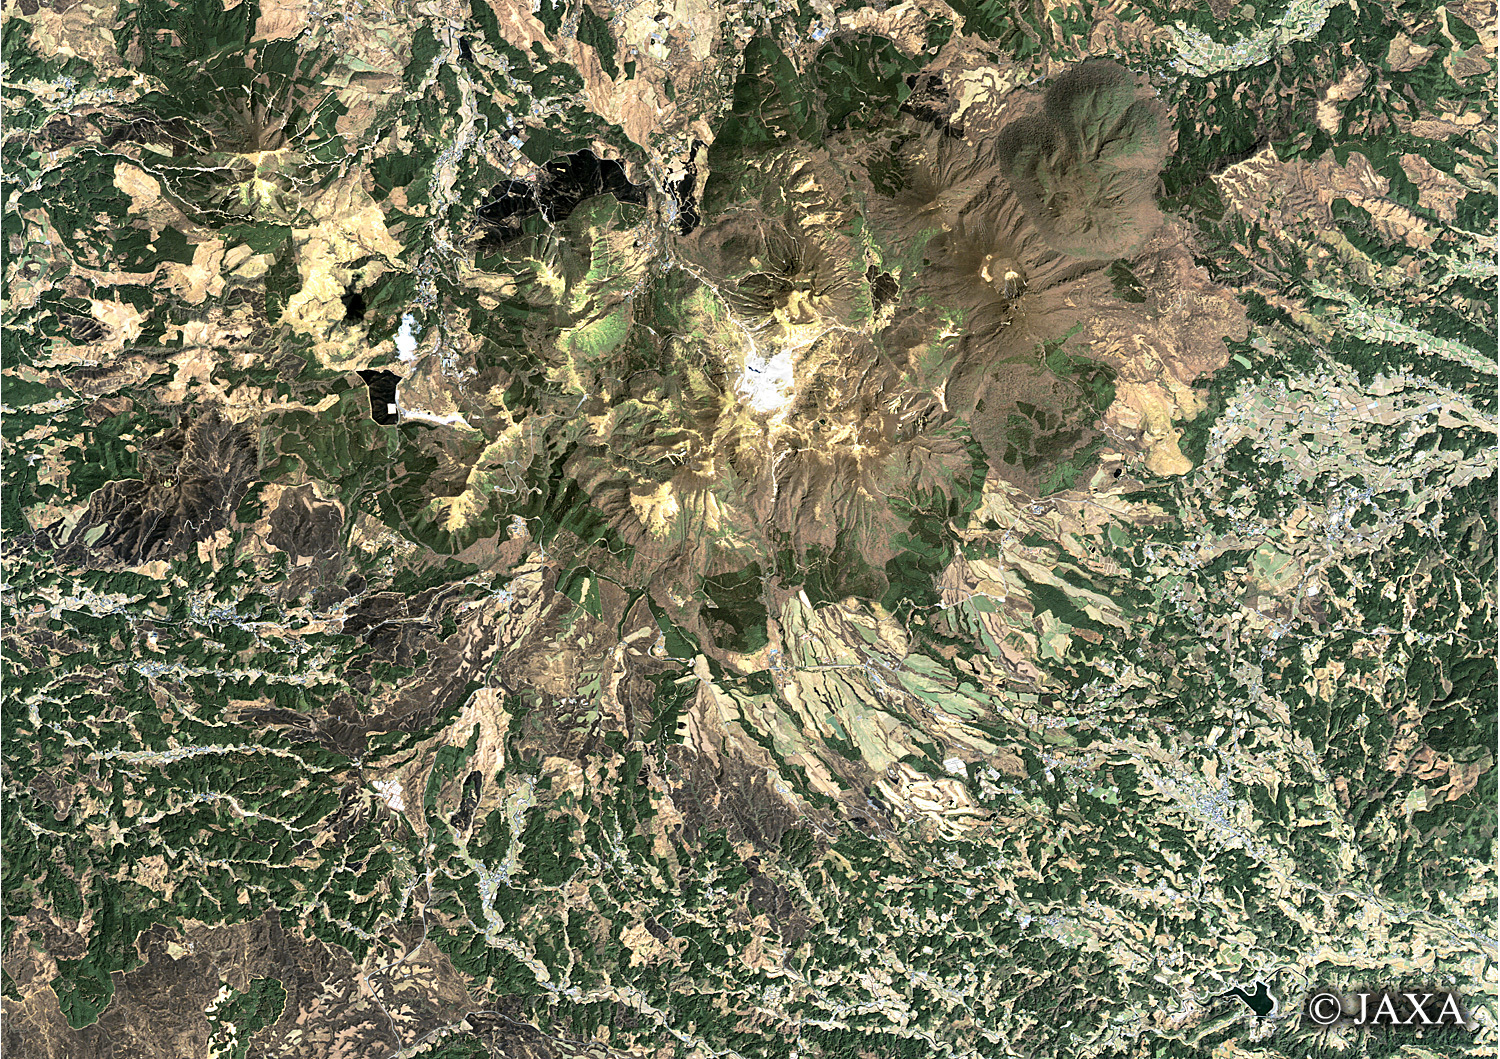 だいちから見た日本の都市 久住連山:衛星画像